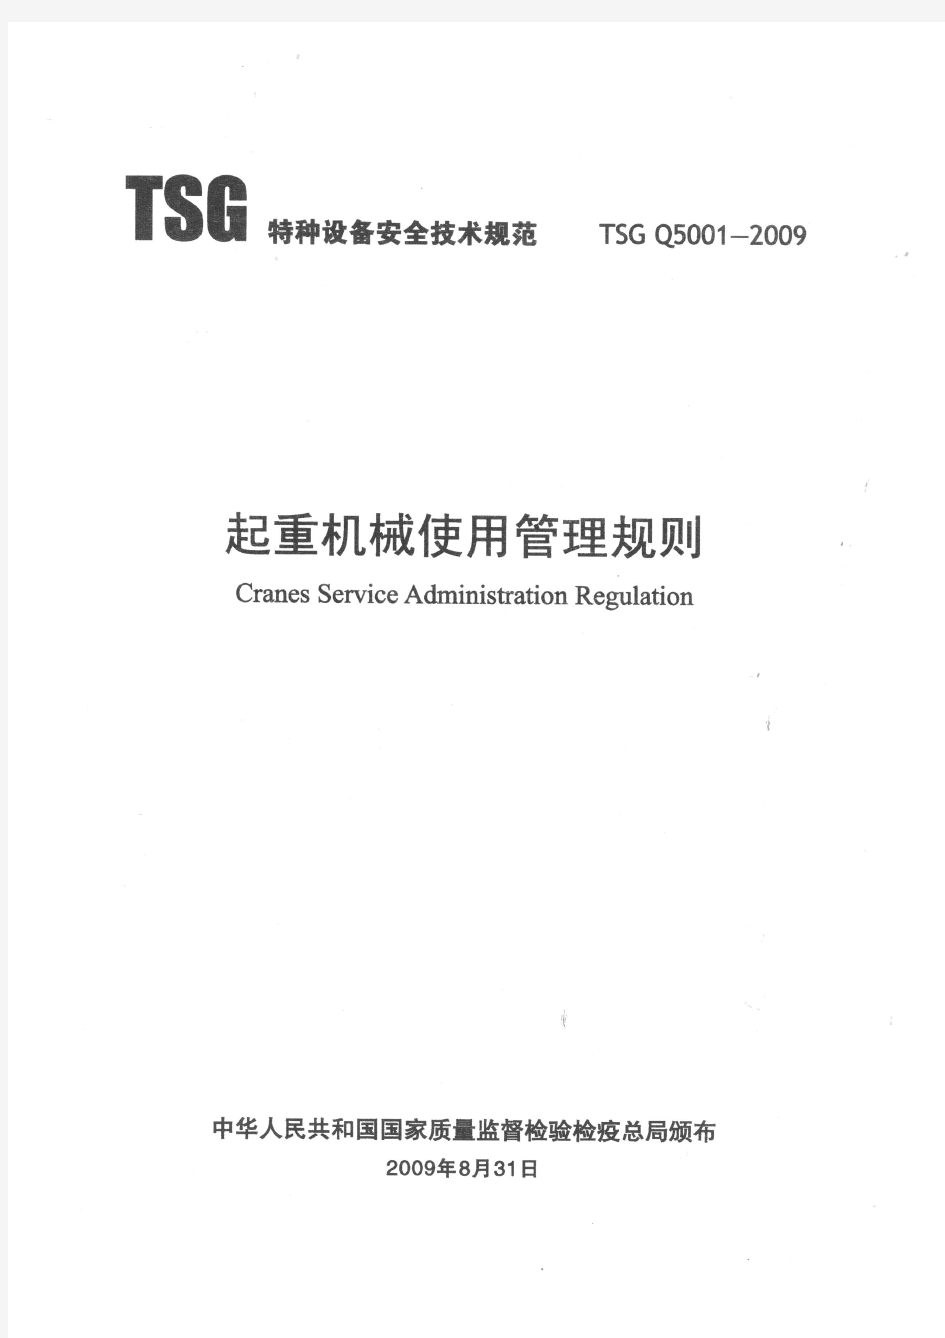 起重机械使用管理规则 TGS Q5001-2009